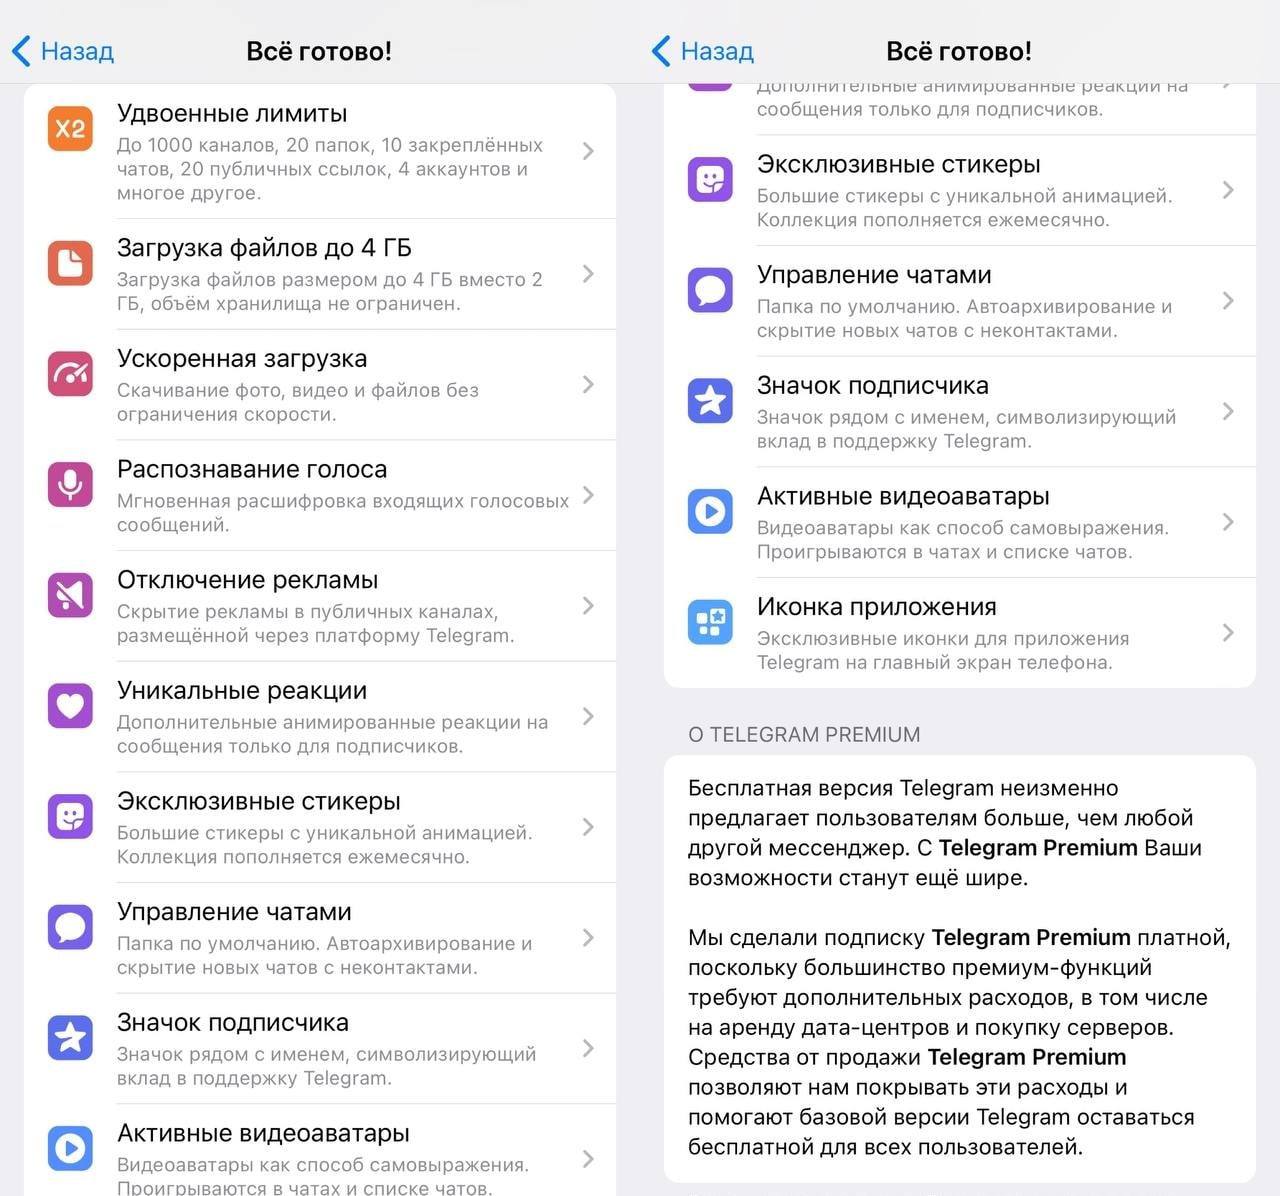 Телеграмм премиум скачать бесплатно андроид последняя версия без вирусов полную на русском языке фото 56